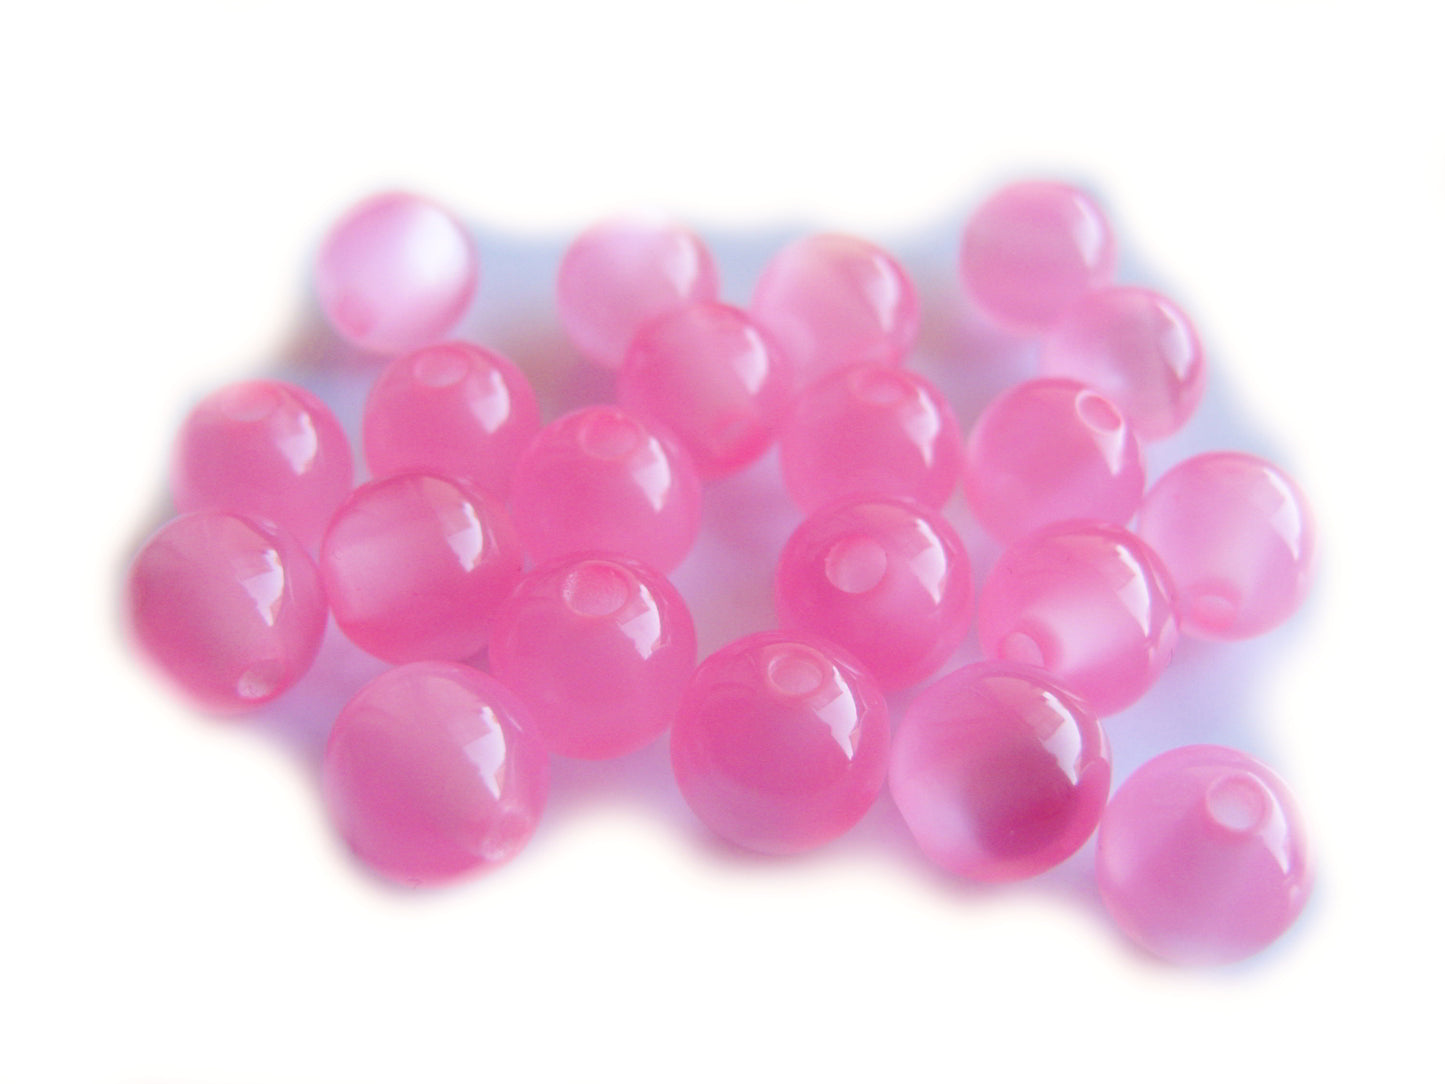 40 Resin Perlen in dunklem rosa 8 mm, Schmuck mit Perlen basteln, Acrylperlen